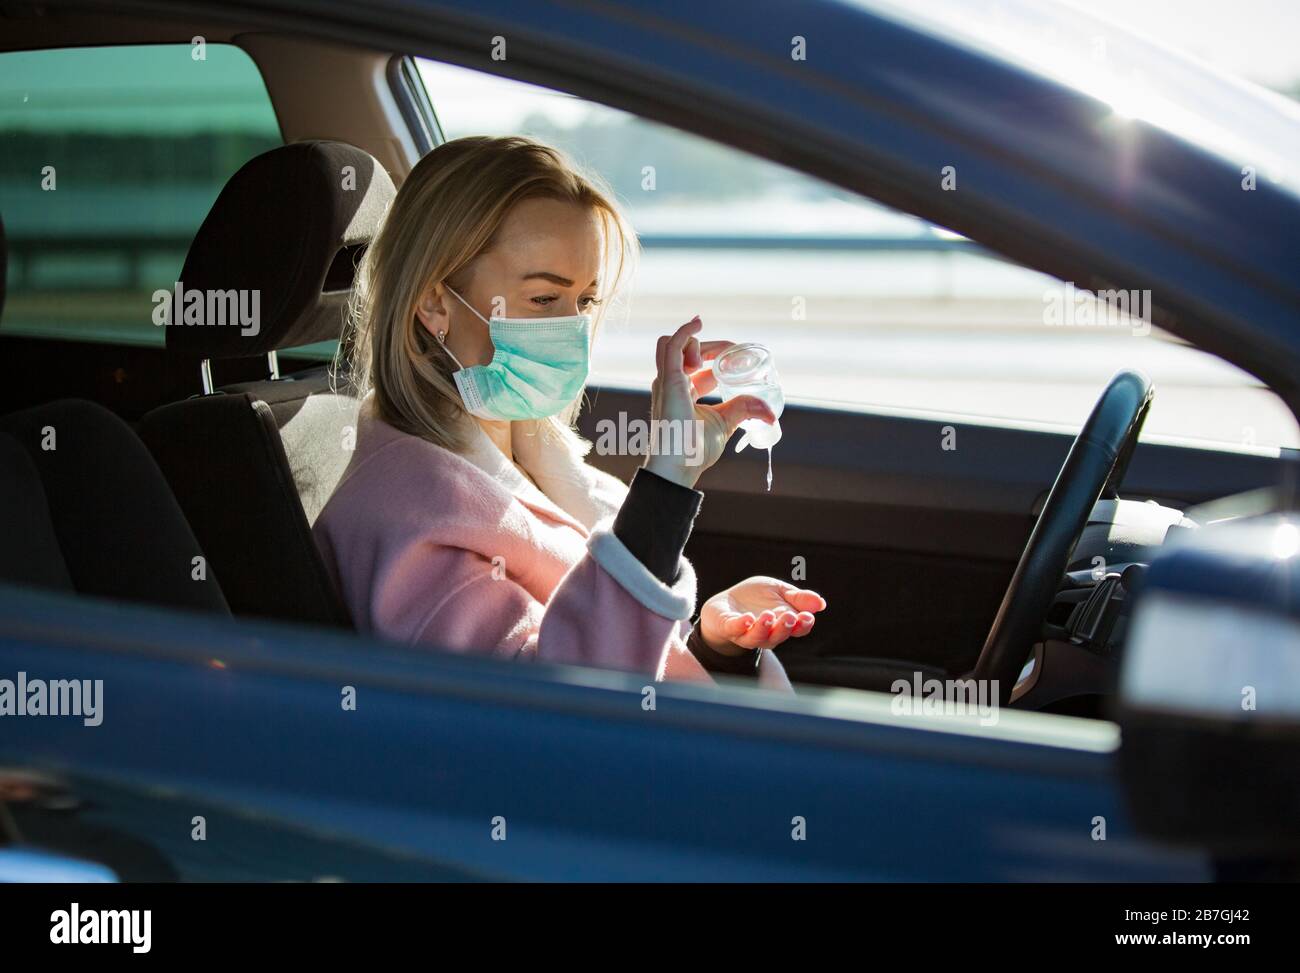 Femme dans un masque de protection assis dans une voiture sur la route, à l'aide d'un désinfectant pour les mains. Transport en toute sécurité. Banque D'Images